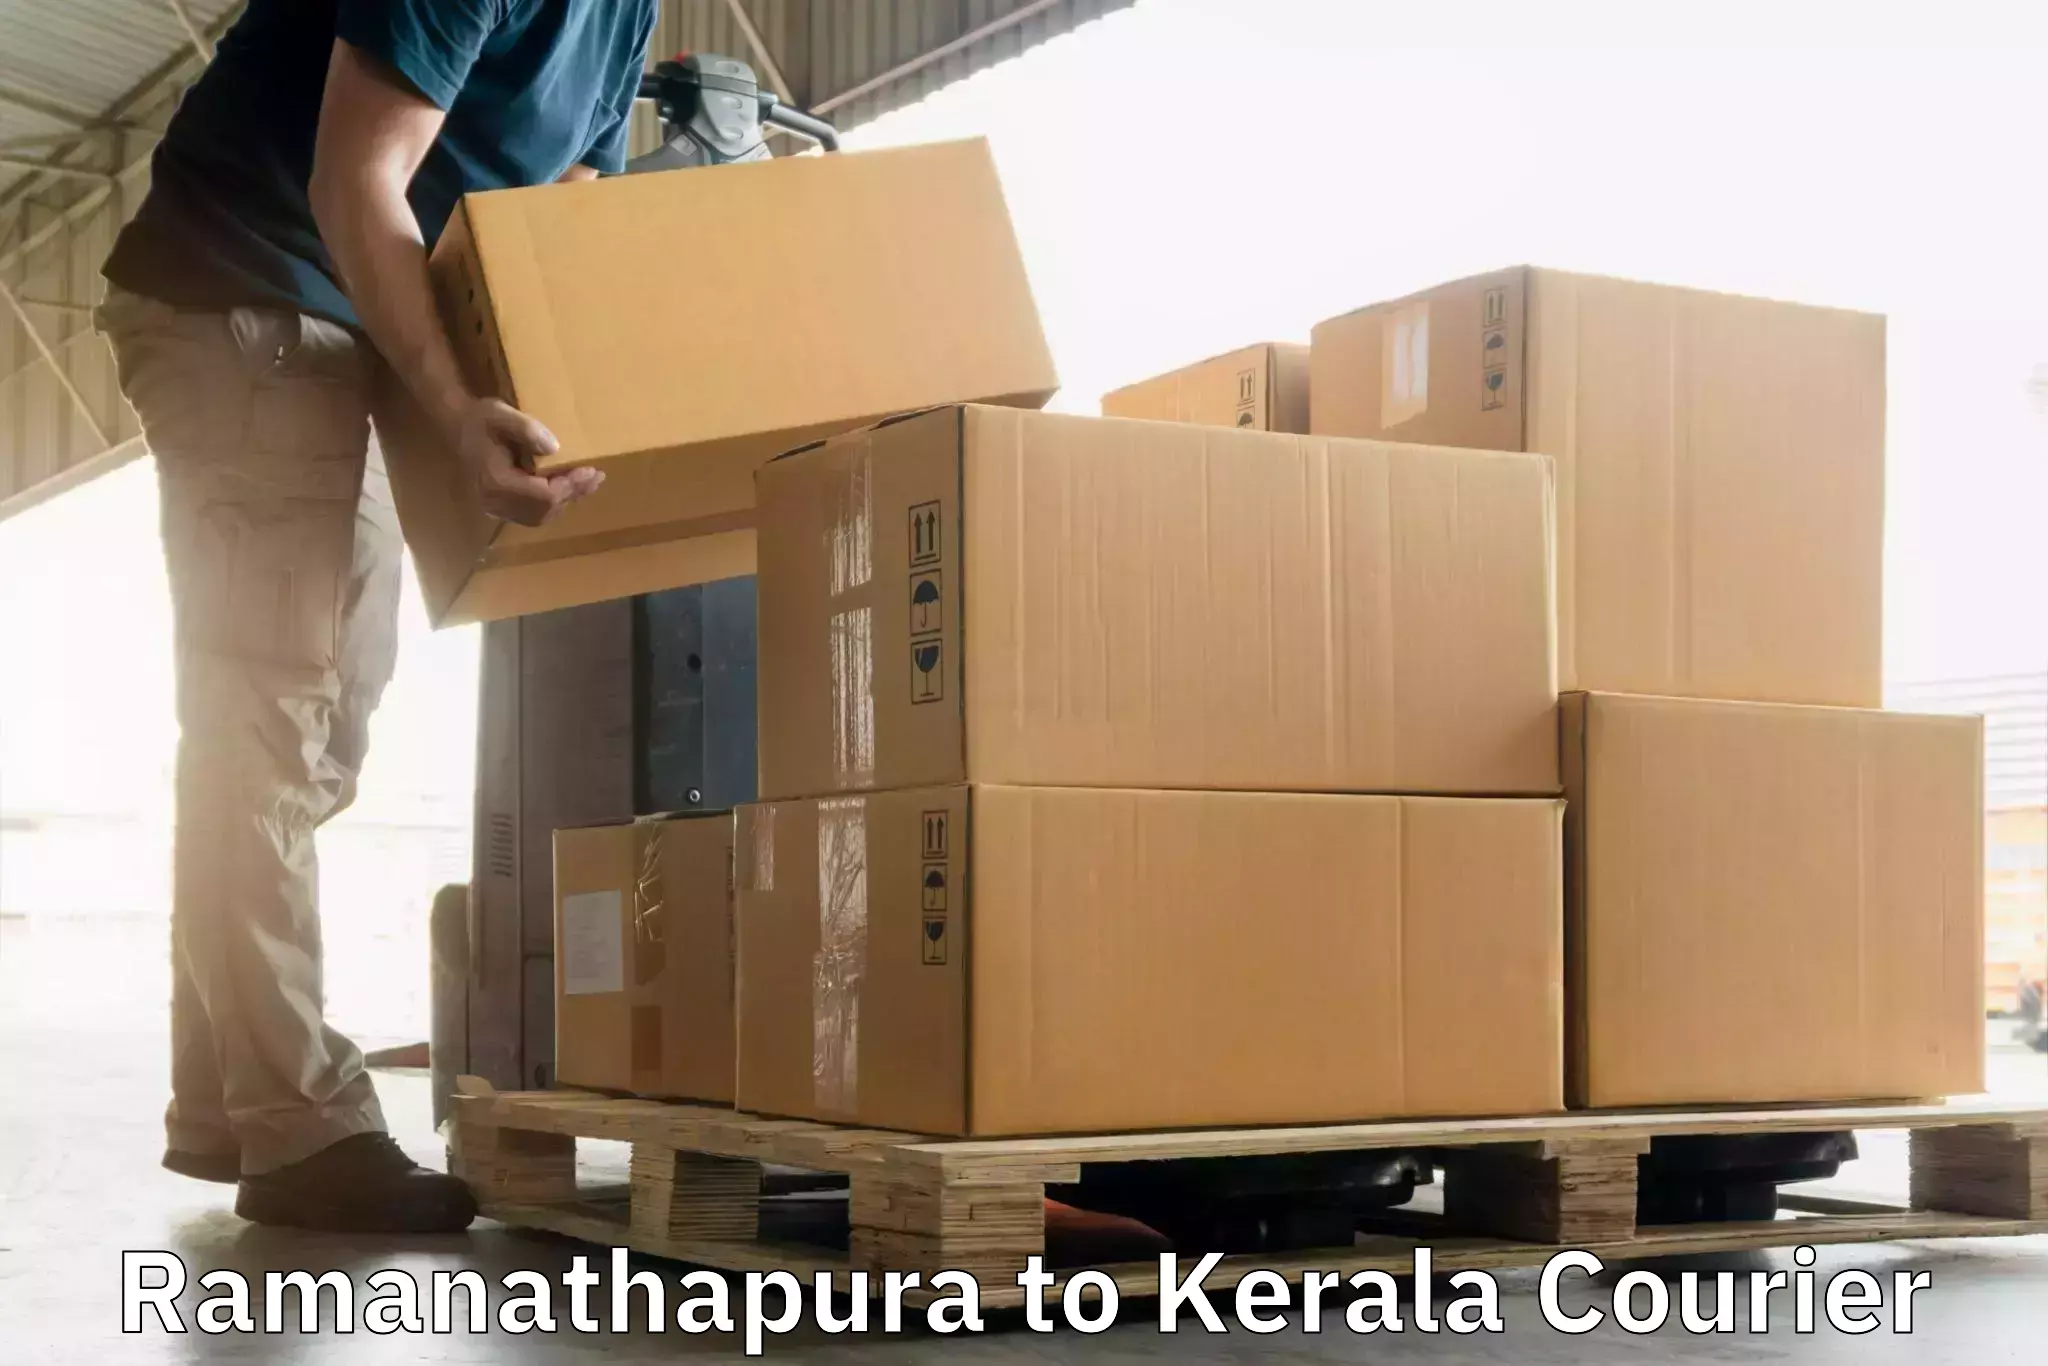 Express courier facilities in Ramanathapura to Palai